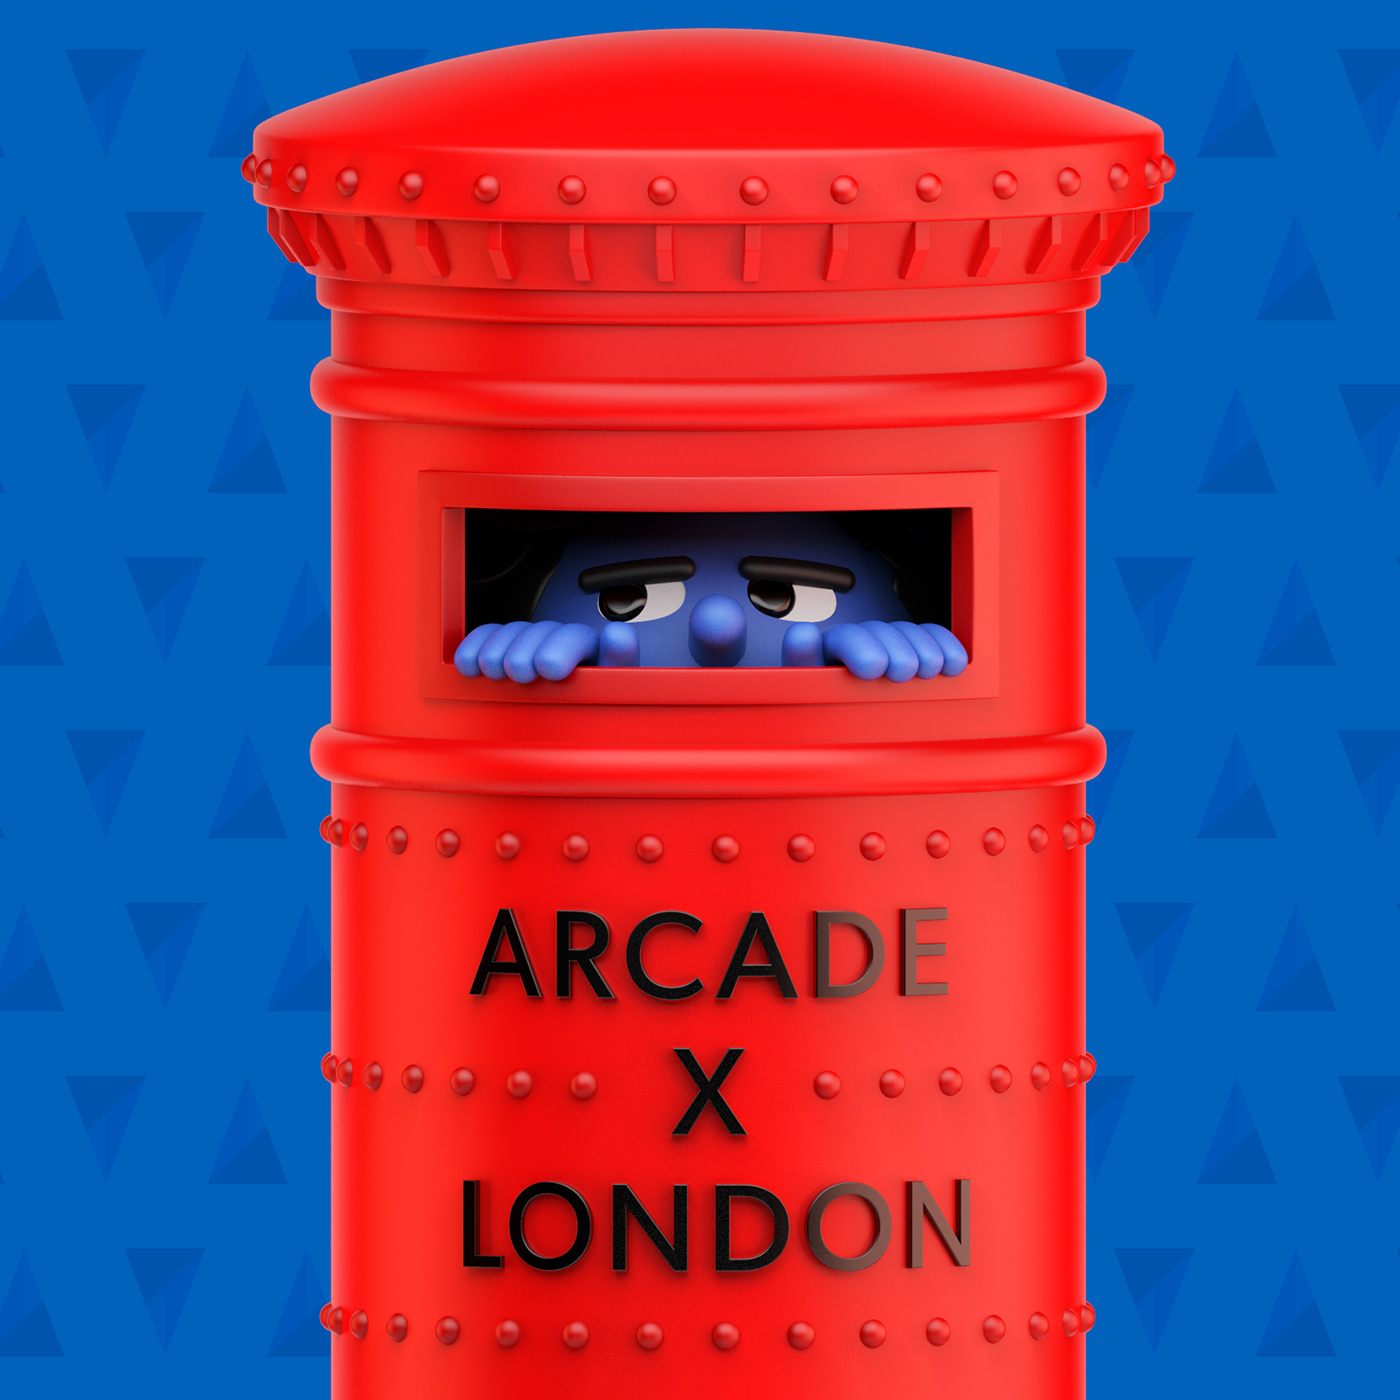 London tarot cards arcade Character design 3D CGI 3D Character